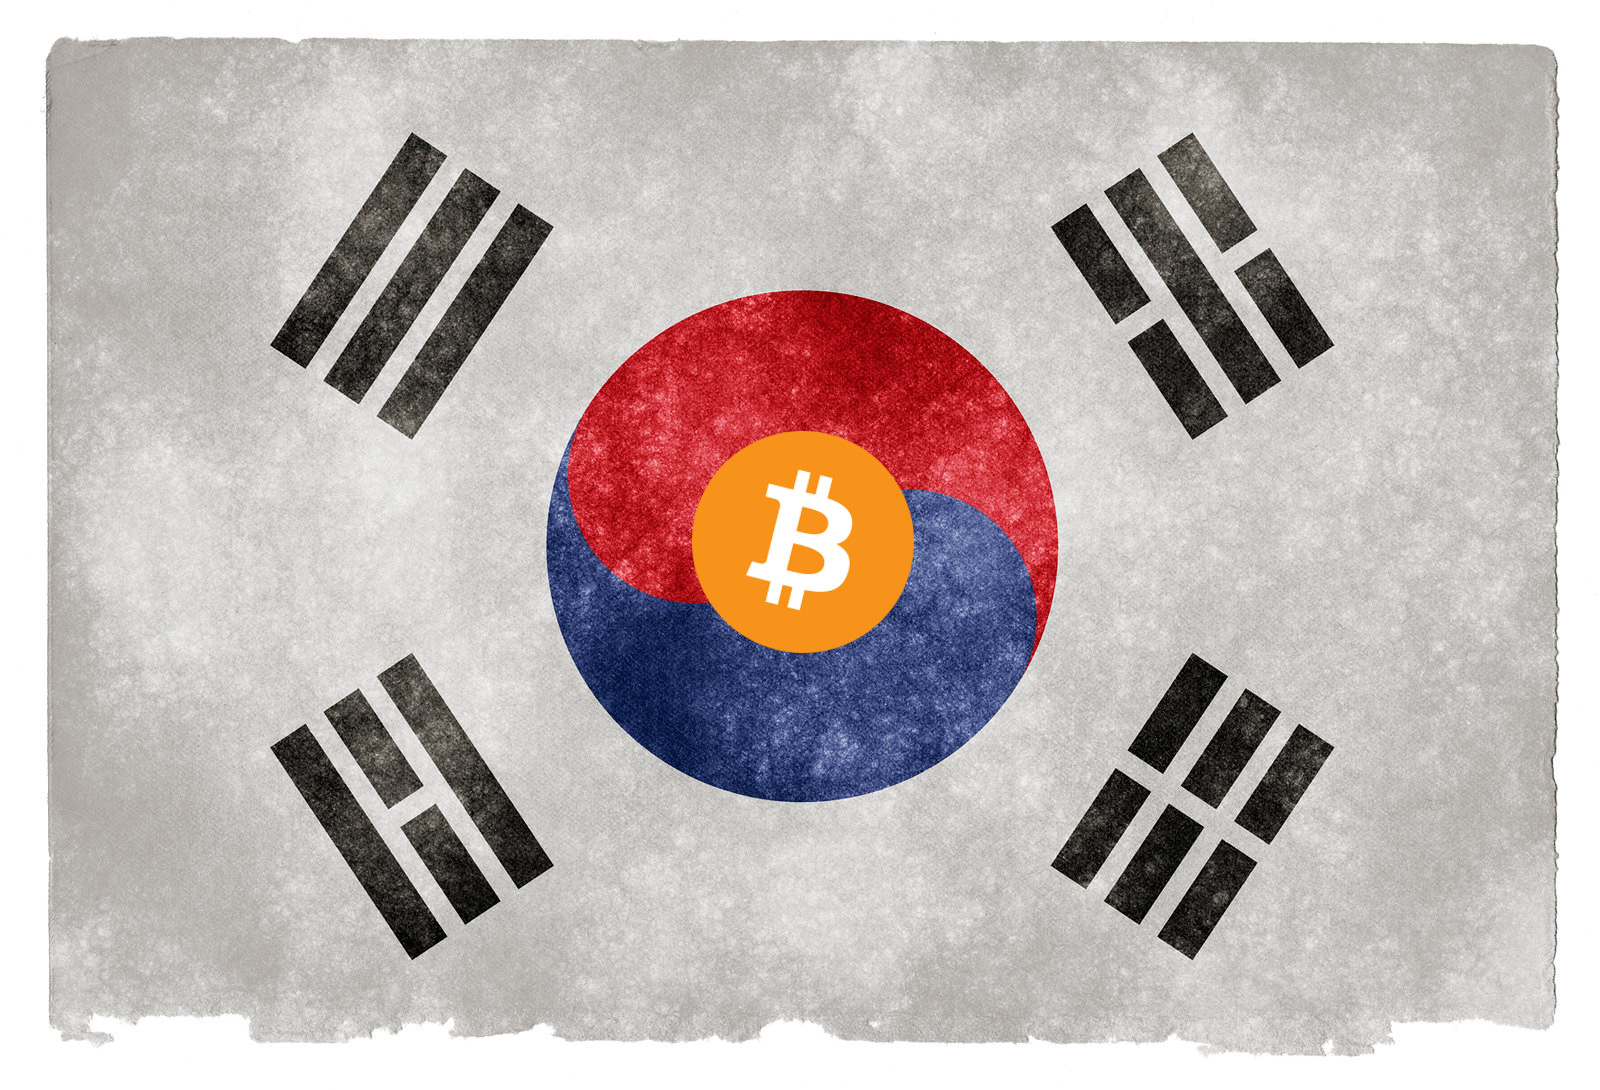 EILMELDUNG: Südkorea legalisiert Bitcoin (BTC) mit Krypto-Gesetz!